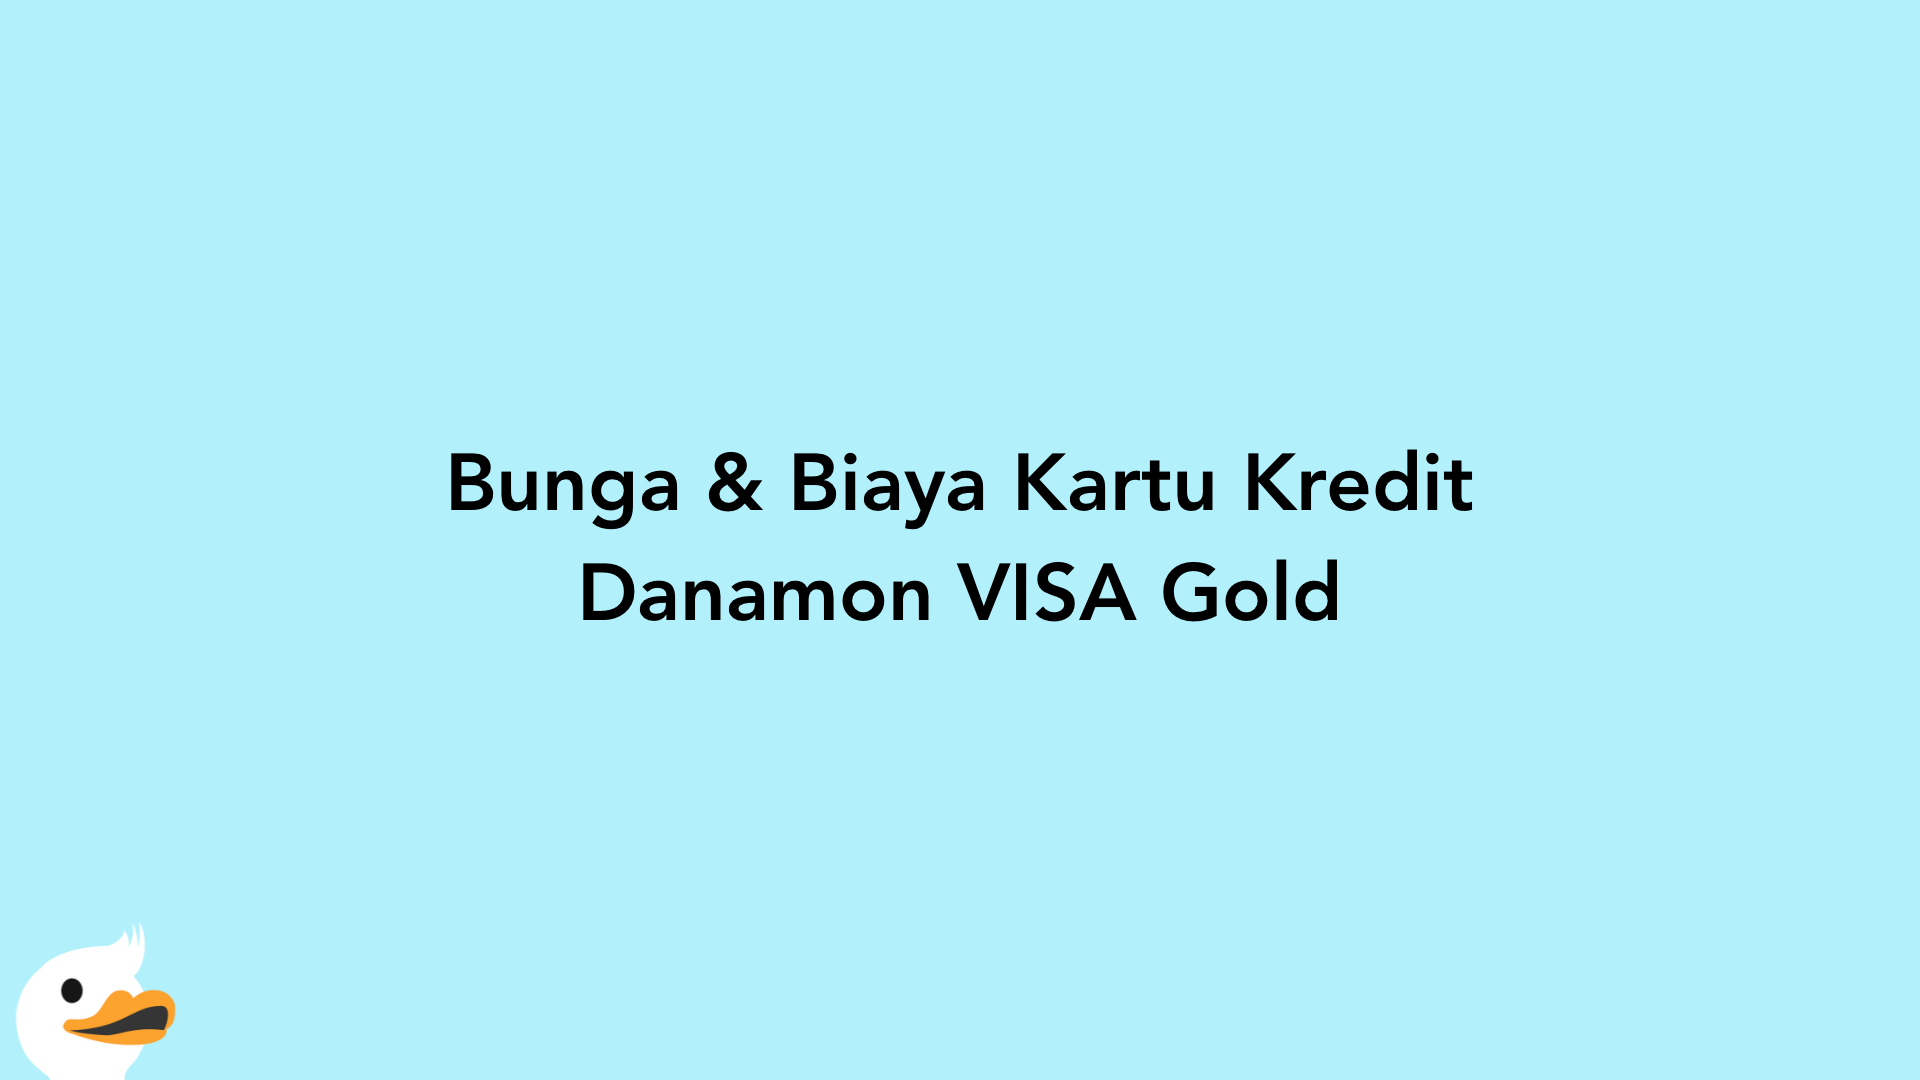 Bunga & Biaya Kartu Kredit Danamon VISA Gold